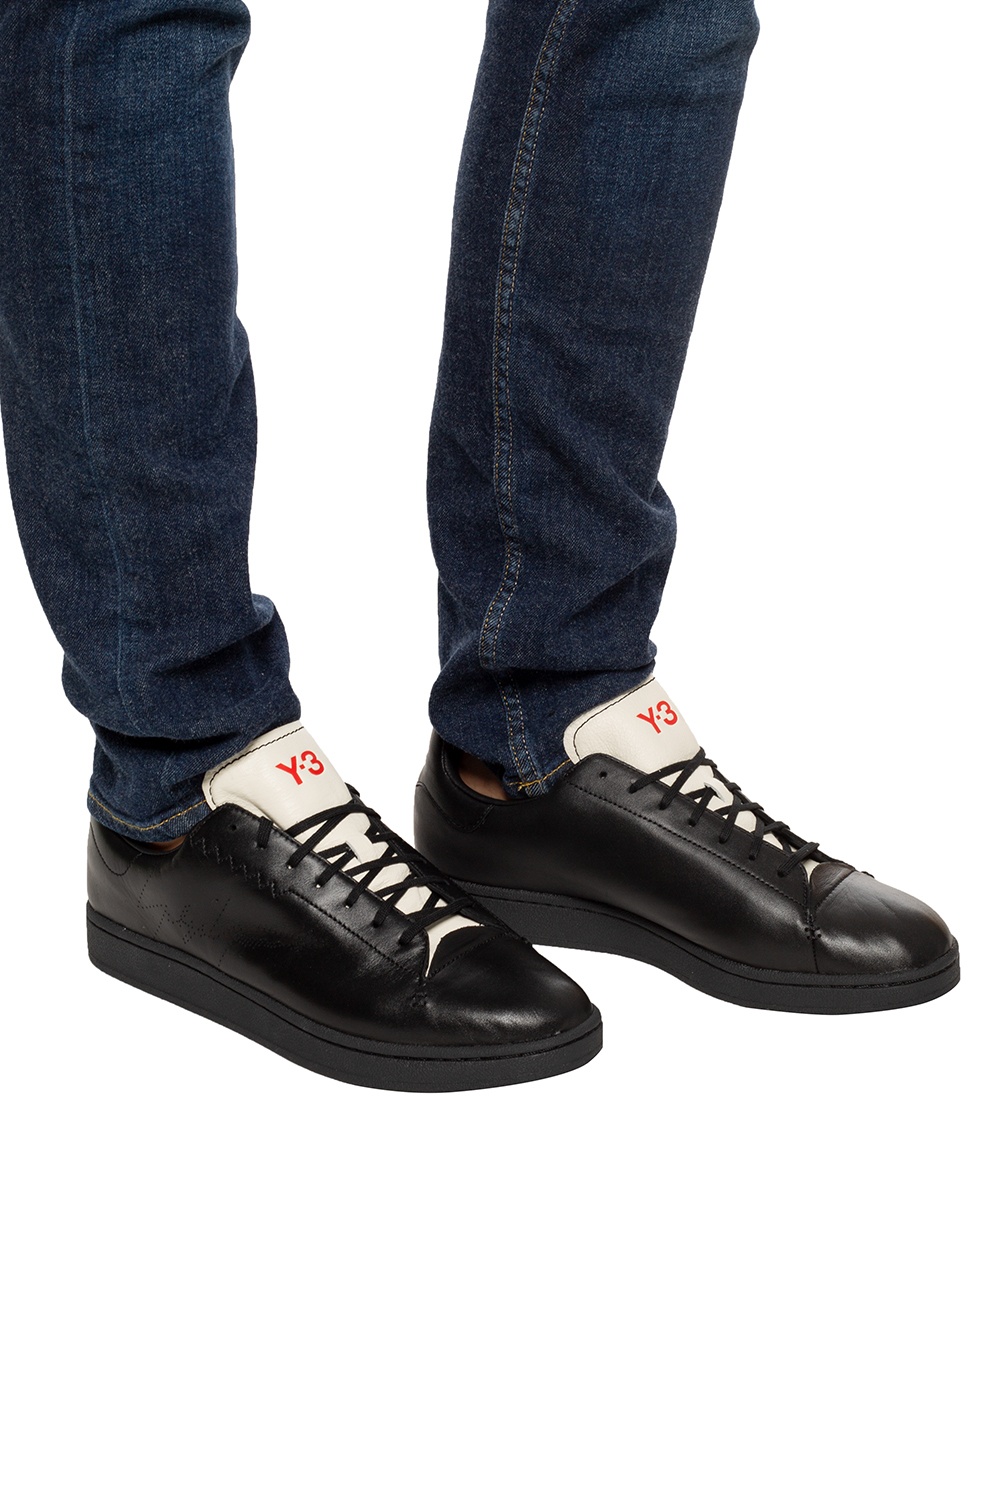 黑色Yohji Court运动鞋Y-3 Yohji Yamamoto - Vitkac 中国